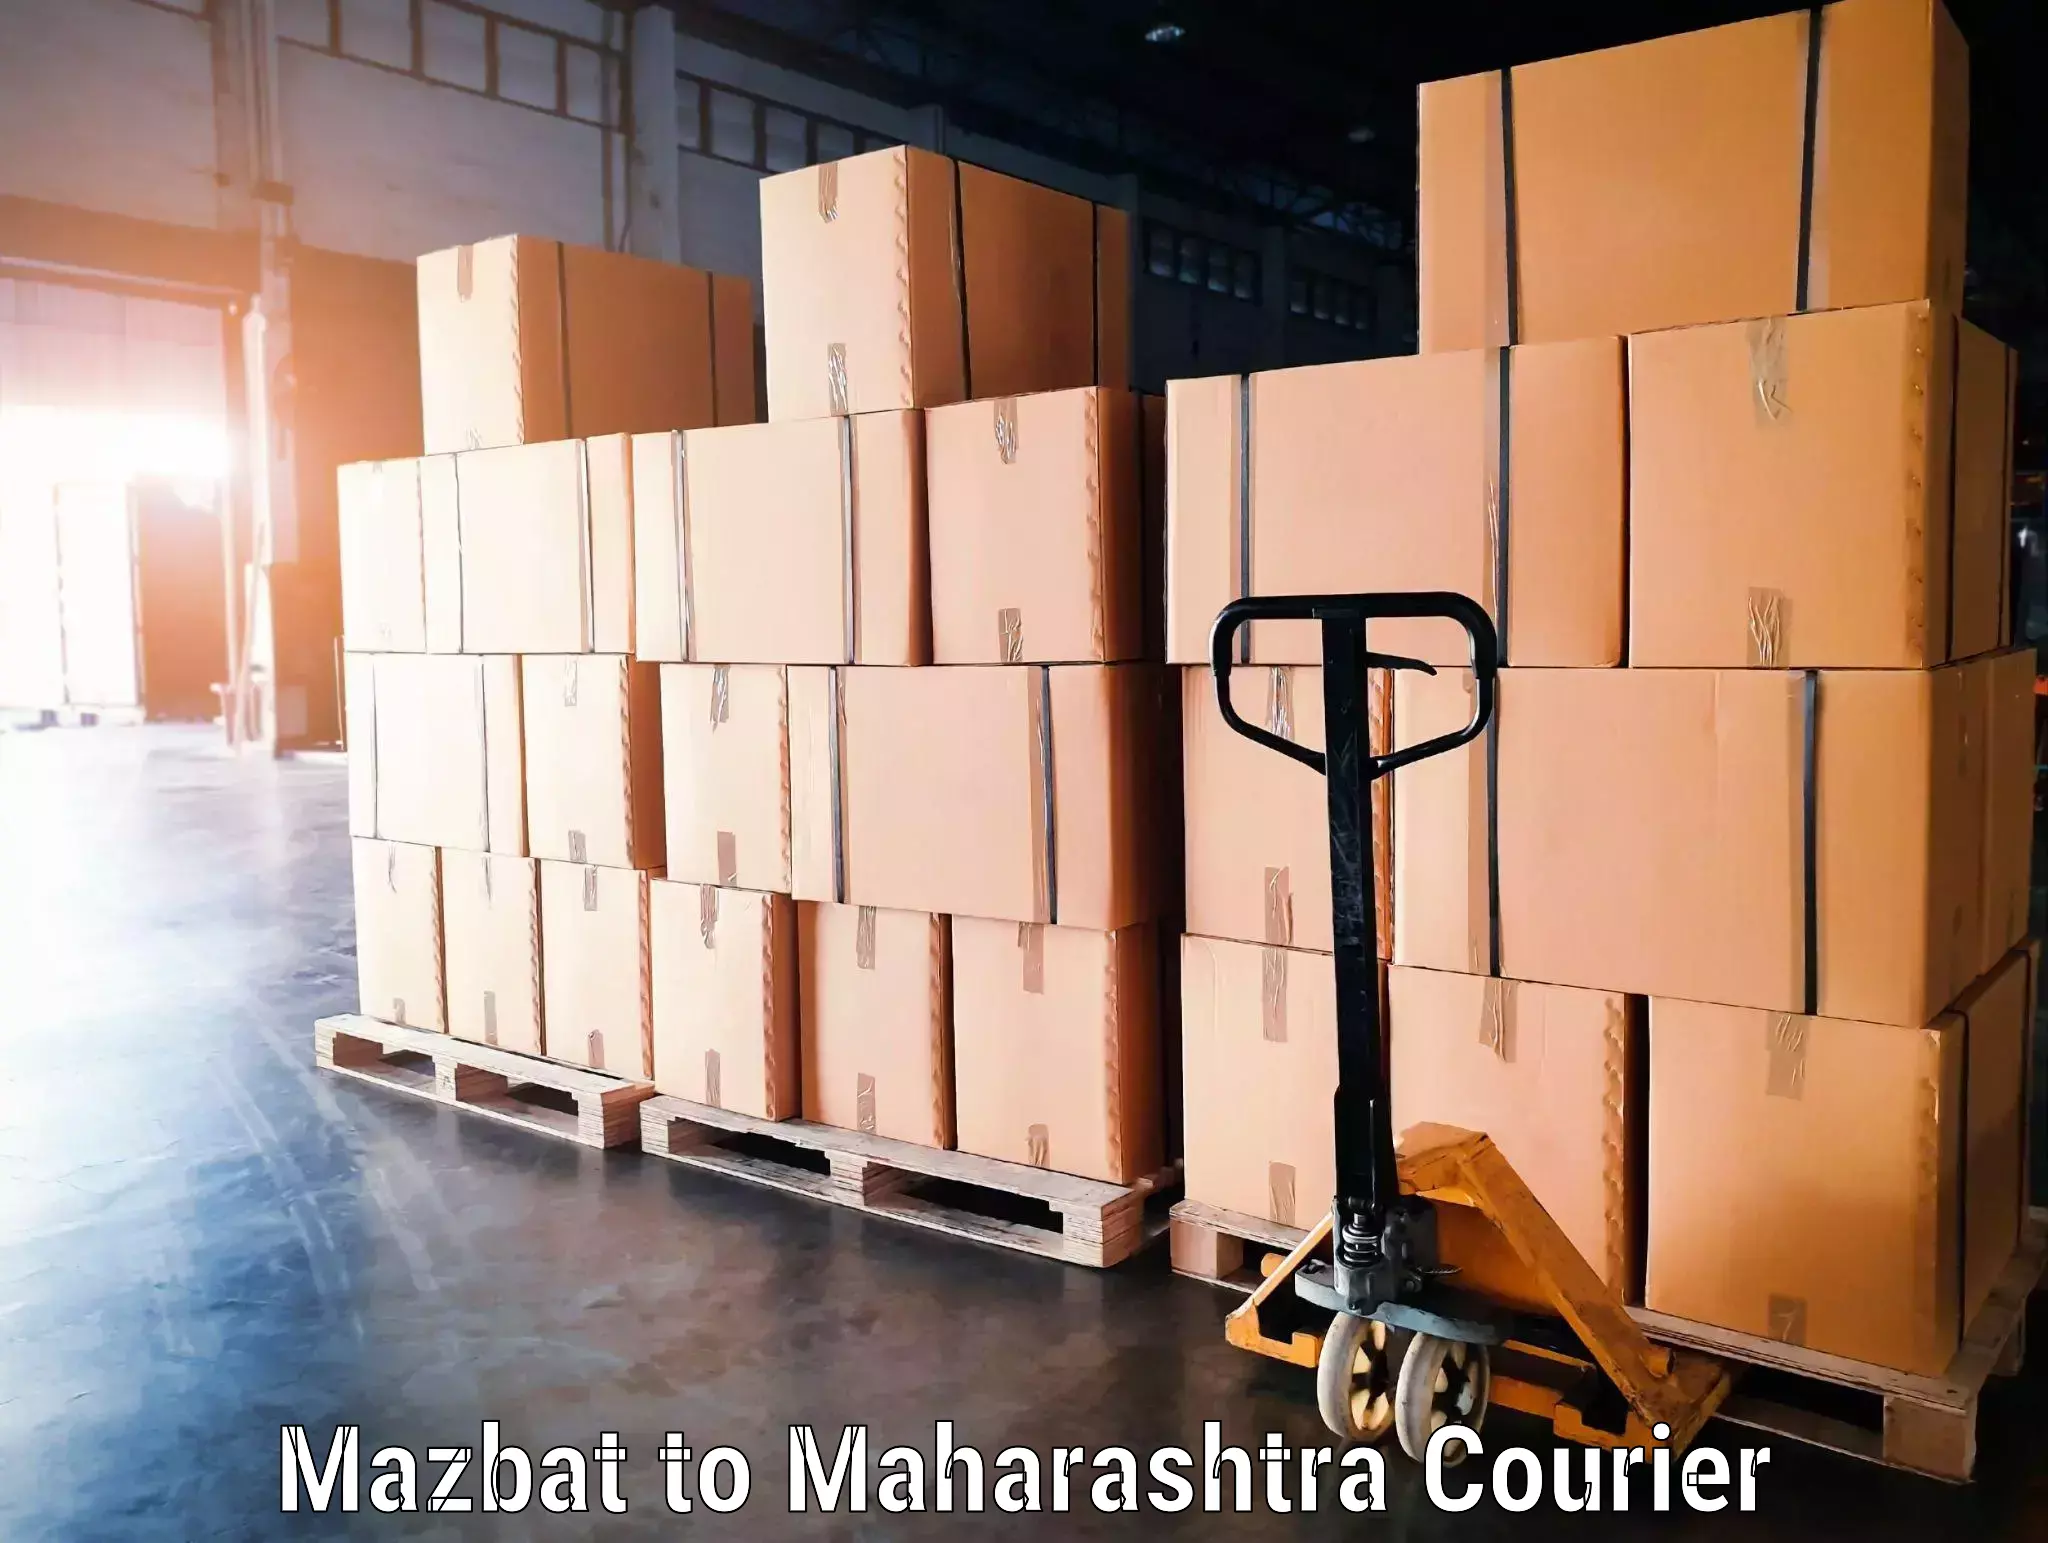 Baggage relocation service Mazbat to Pandharpur